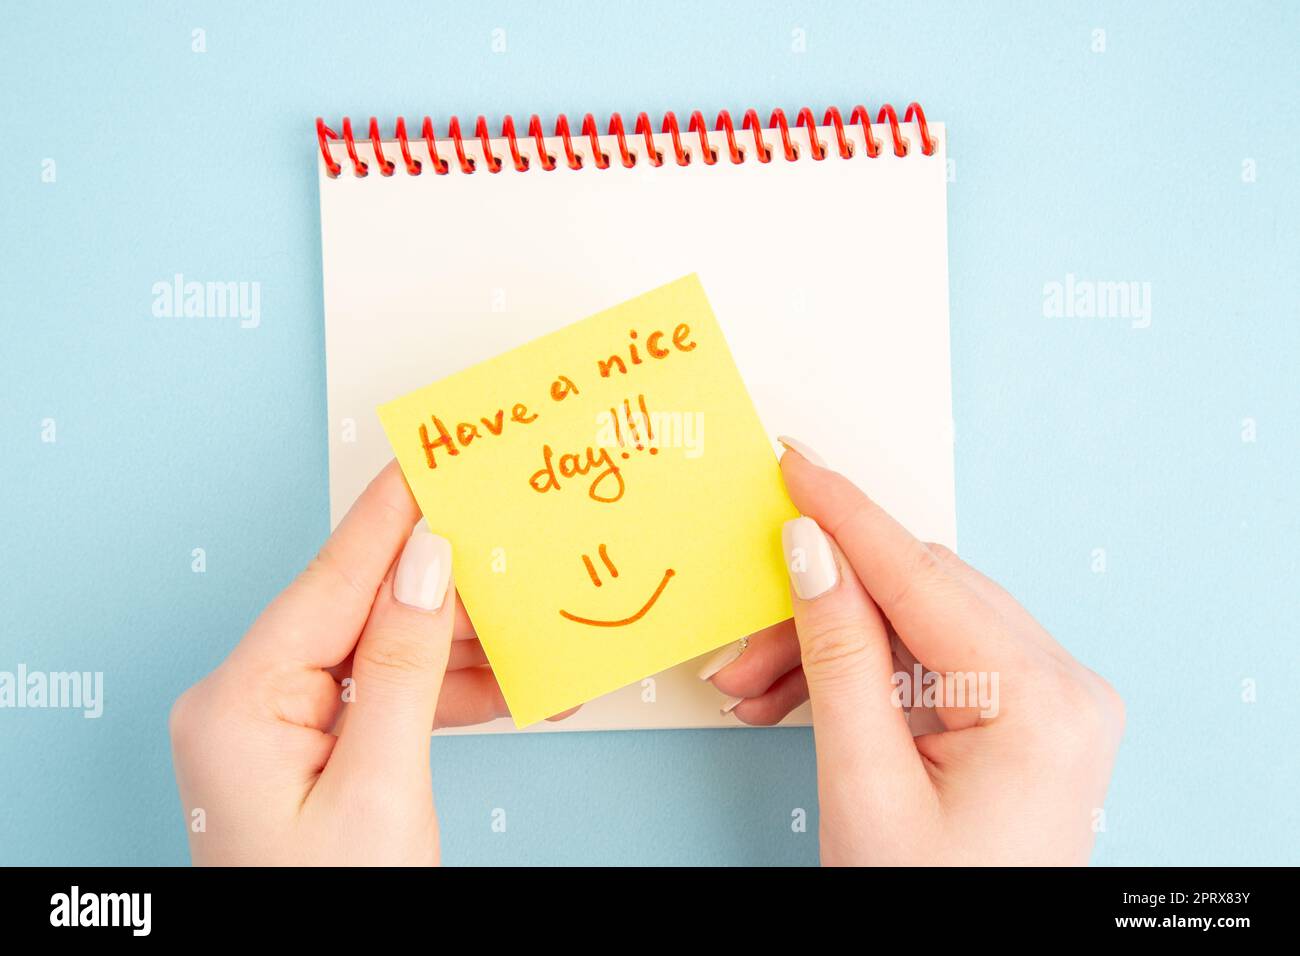 Spiralnotizbuch mit Draufsicht, weibliche Hand, gelbes Notizpapier mit schönen Tagesausdrücken auf blauem Hintergrund Stockfoto